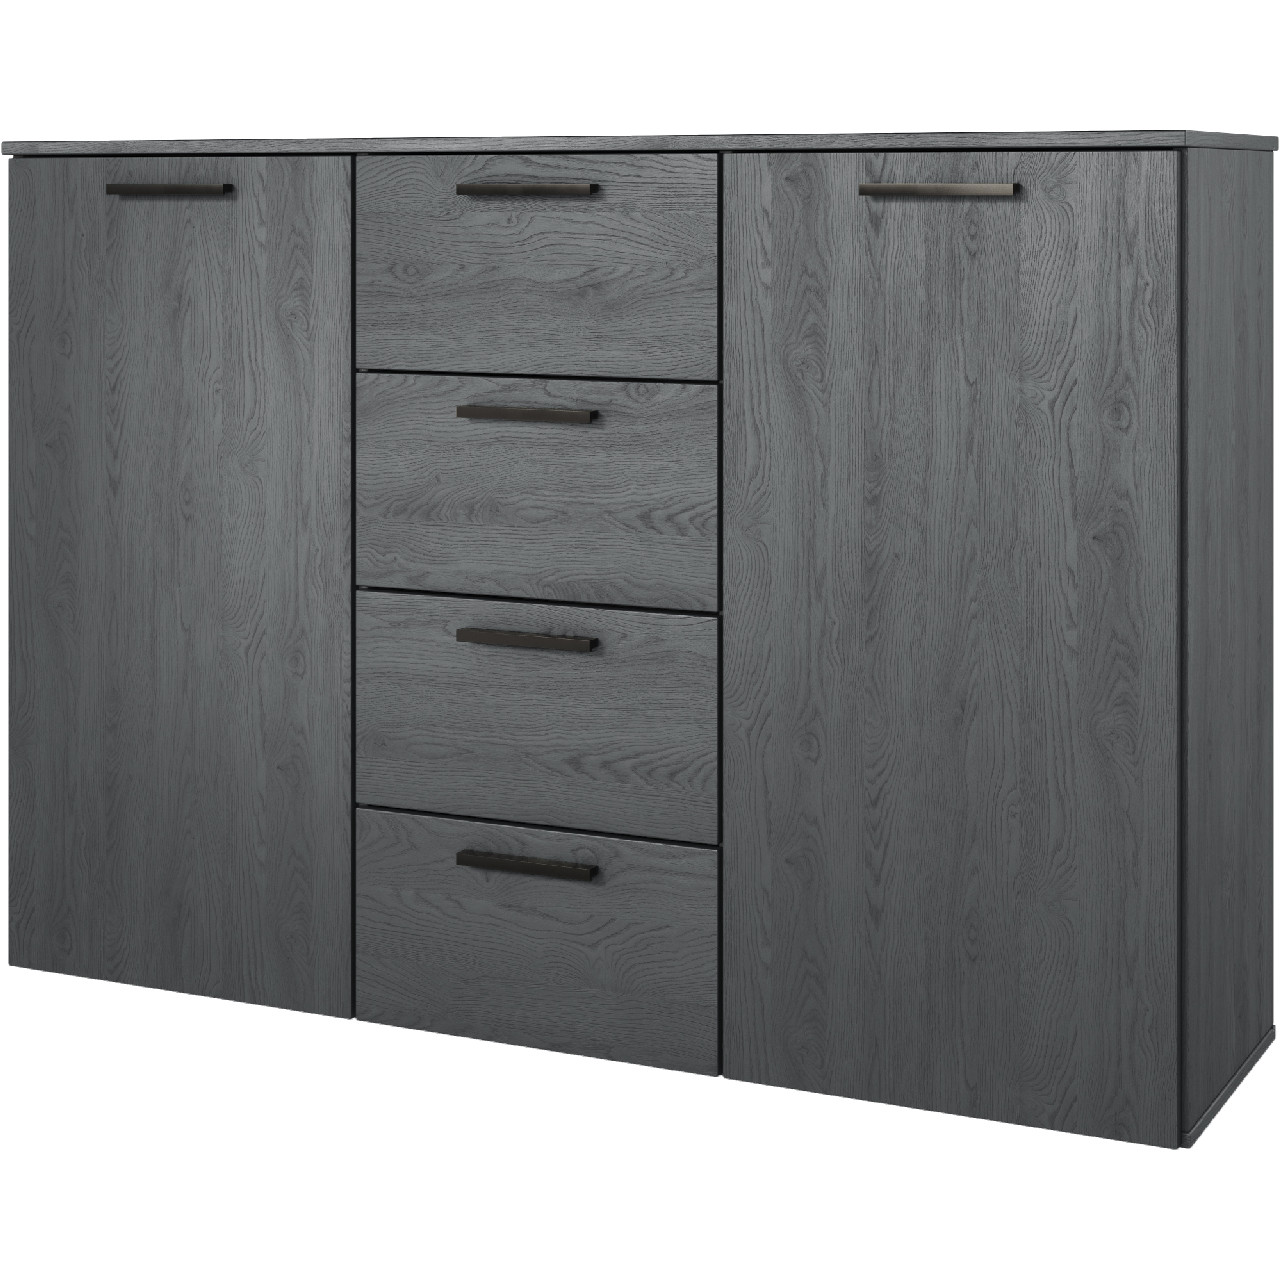 Storage cabinet GALAXY GX26 carbon oak